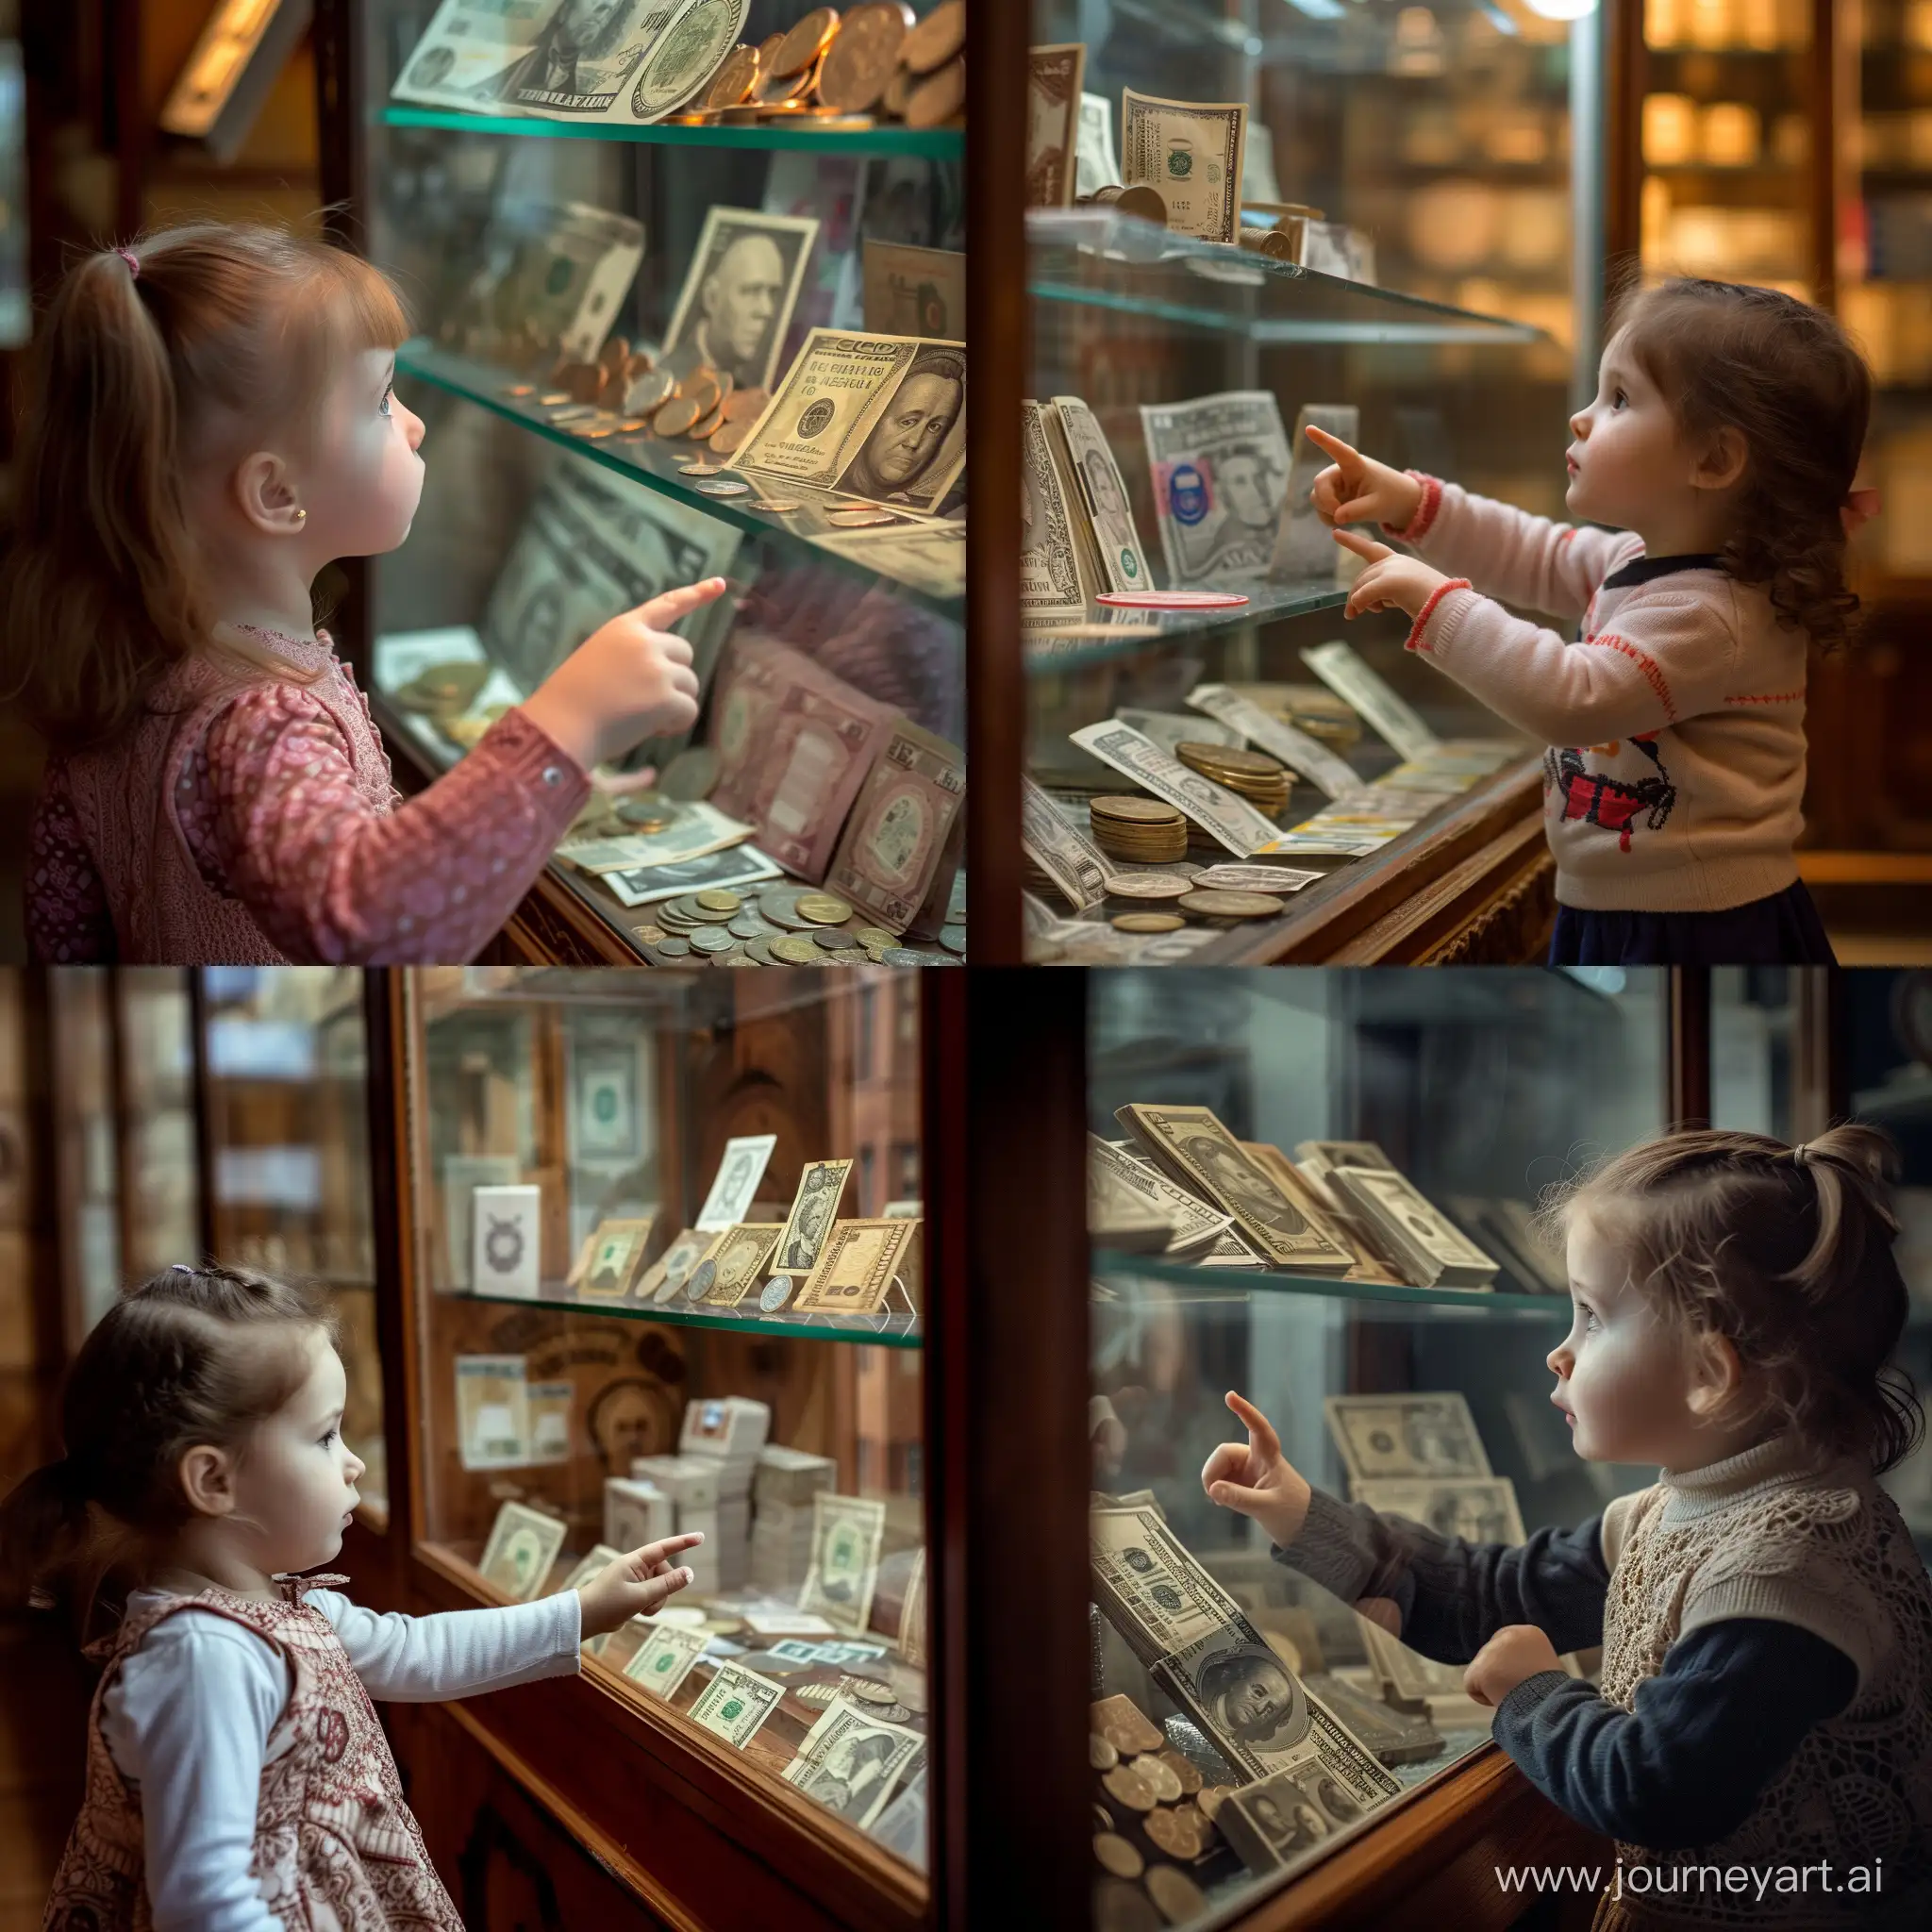 Маленькая девочка смотрит на экспонаты музея и показывает пальчиком на них, под стеклом музейного стенда лежат купюры и монеты разных стран и времён, фотография, гиперреализм, высокое разрешение